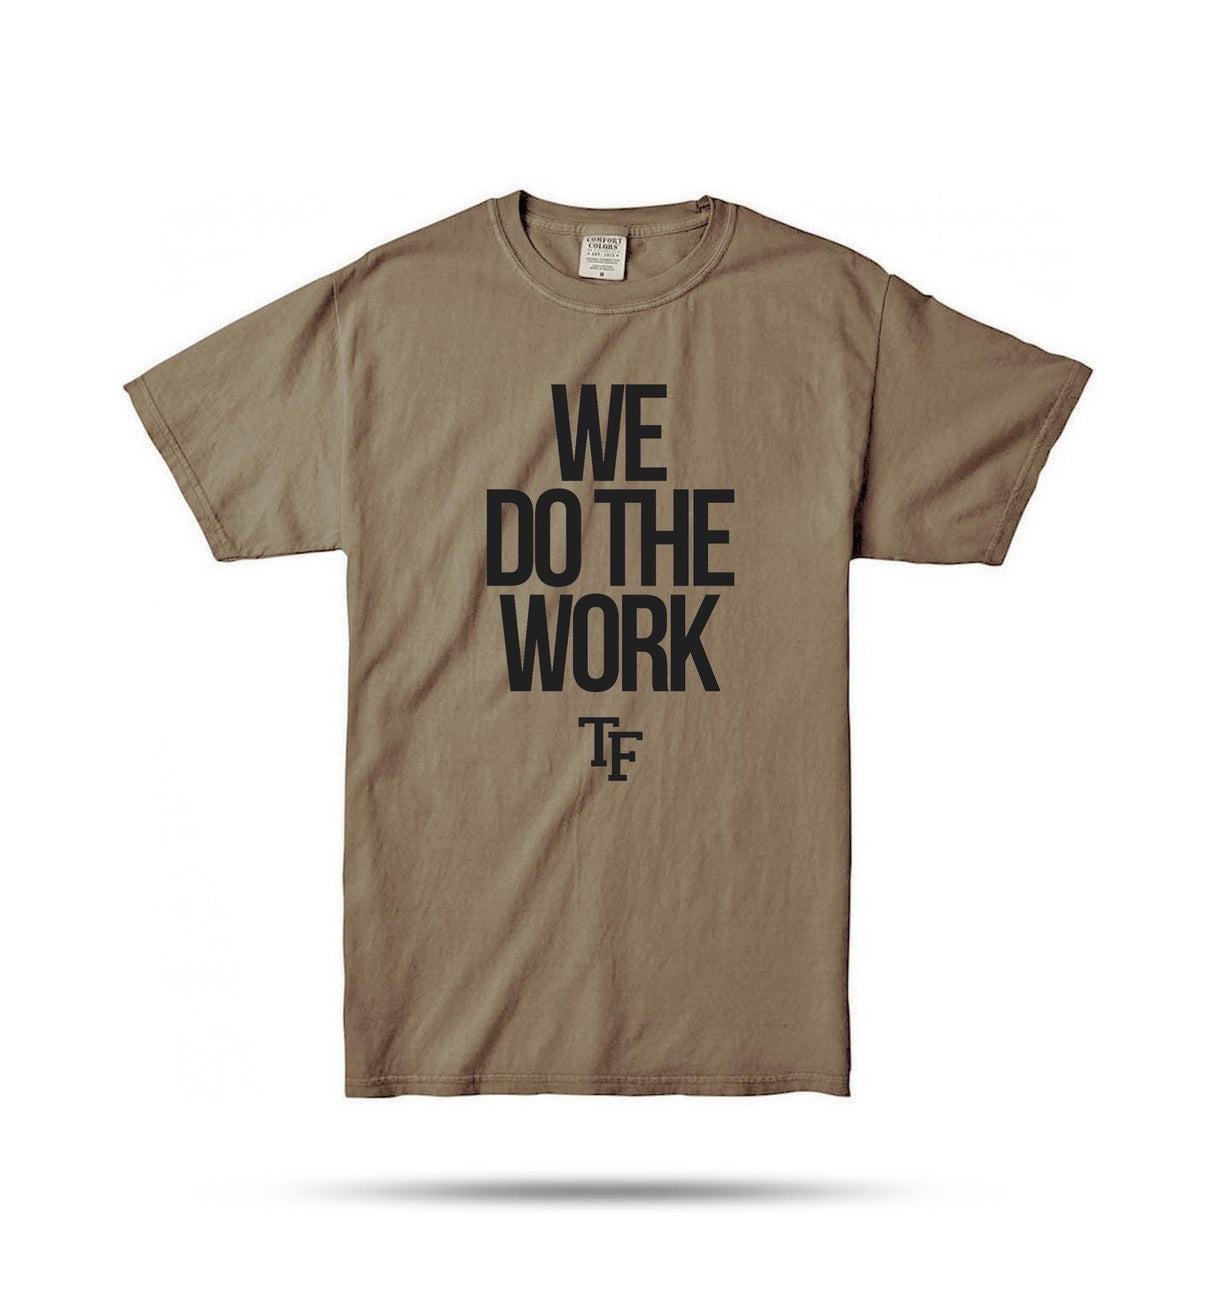 We Do The Work Shirt (Tan)